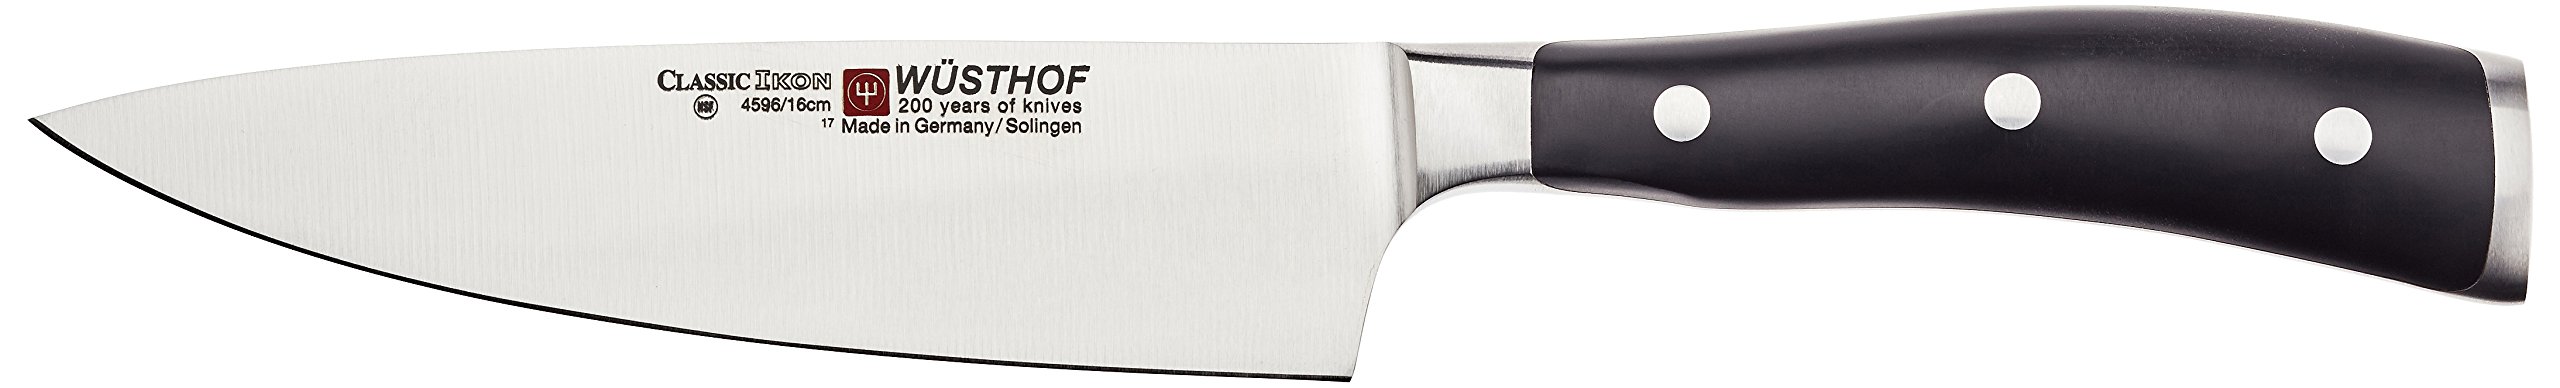 WÜSTHOF Kochmesser 16 cm Klinge, Classic Ikon (4596-7/16), Scharfes Küchenmesser, optimale Balance durch Doppelkropf